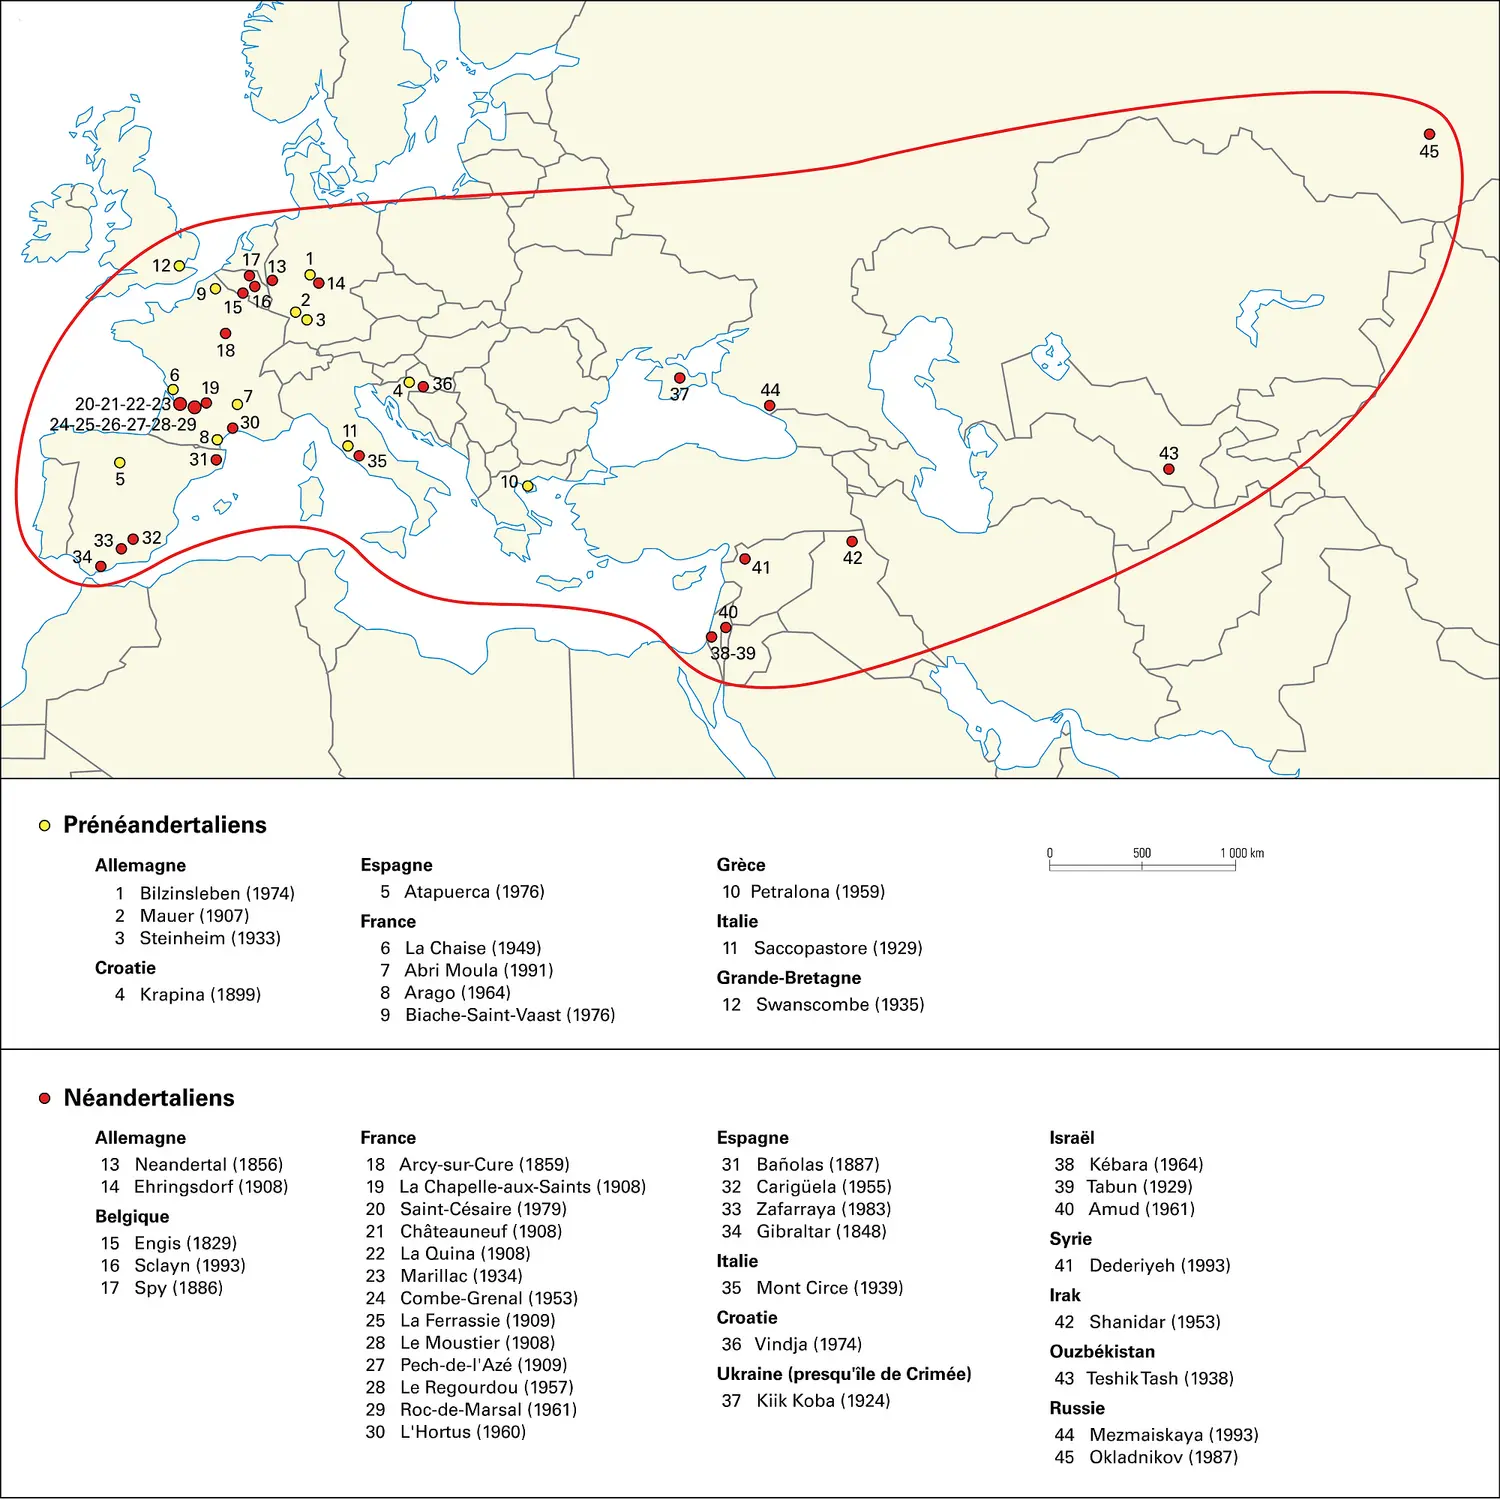 Prénéandertaliens et Néandertaliens : principaux gisements